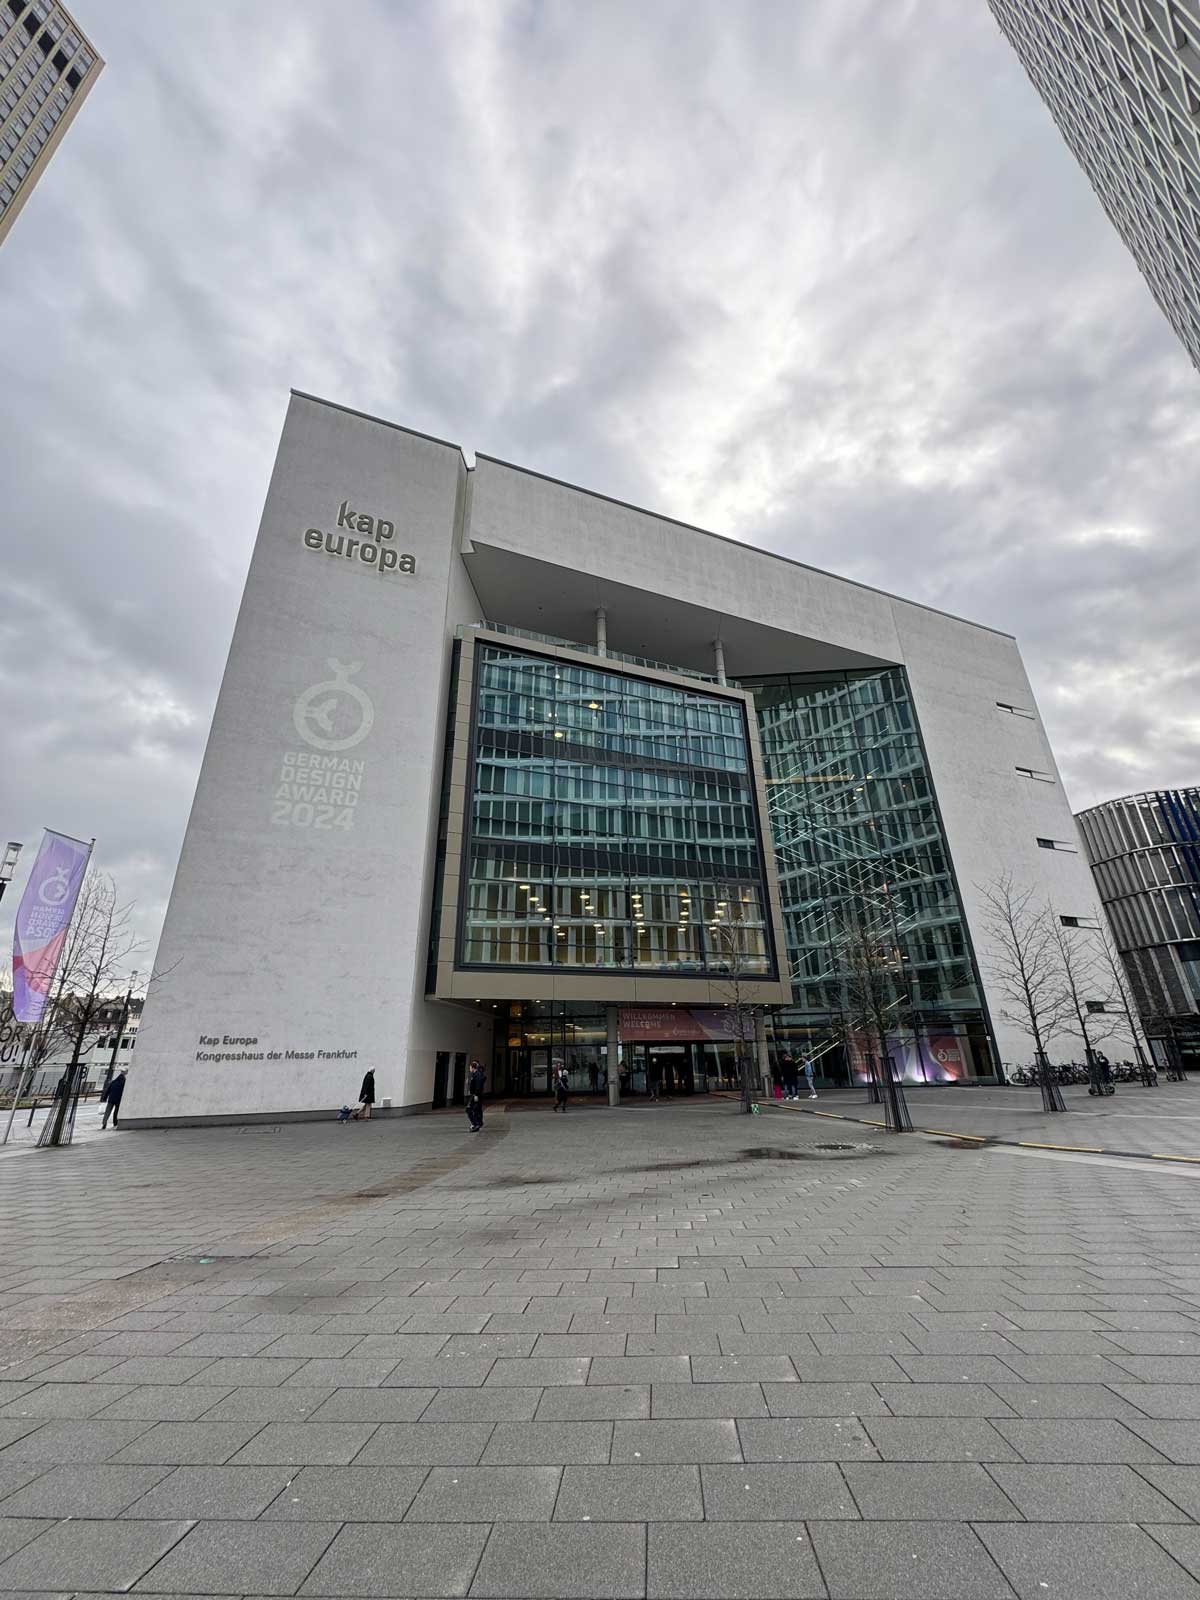 Außenansicht des Kap Europa, Kongresshaus der Messe Frankfurt. Das Logo des German Design Award 2024 ist auf die linke Seite der Fassade projiziert.